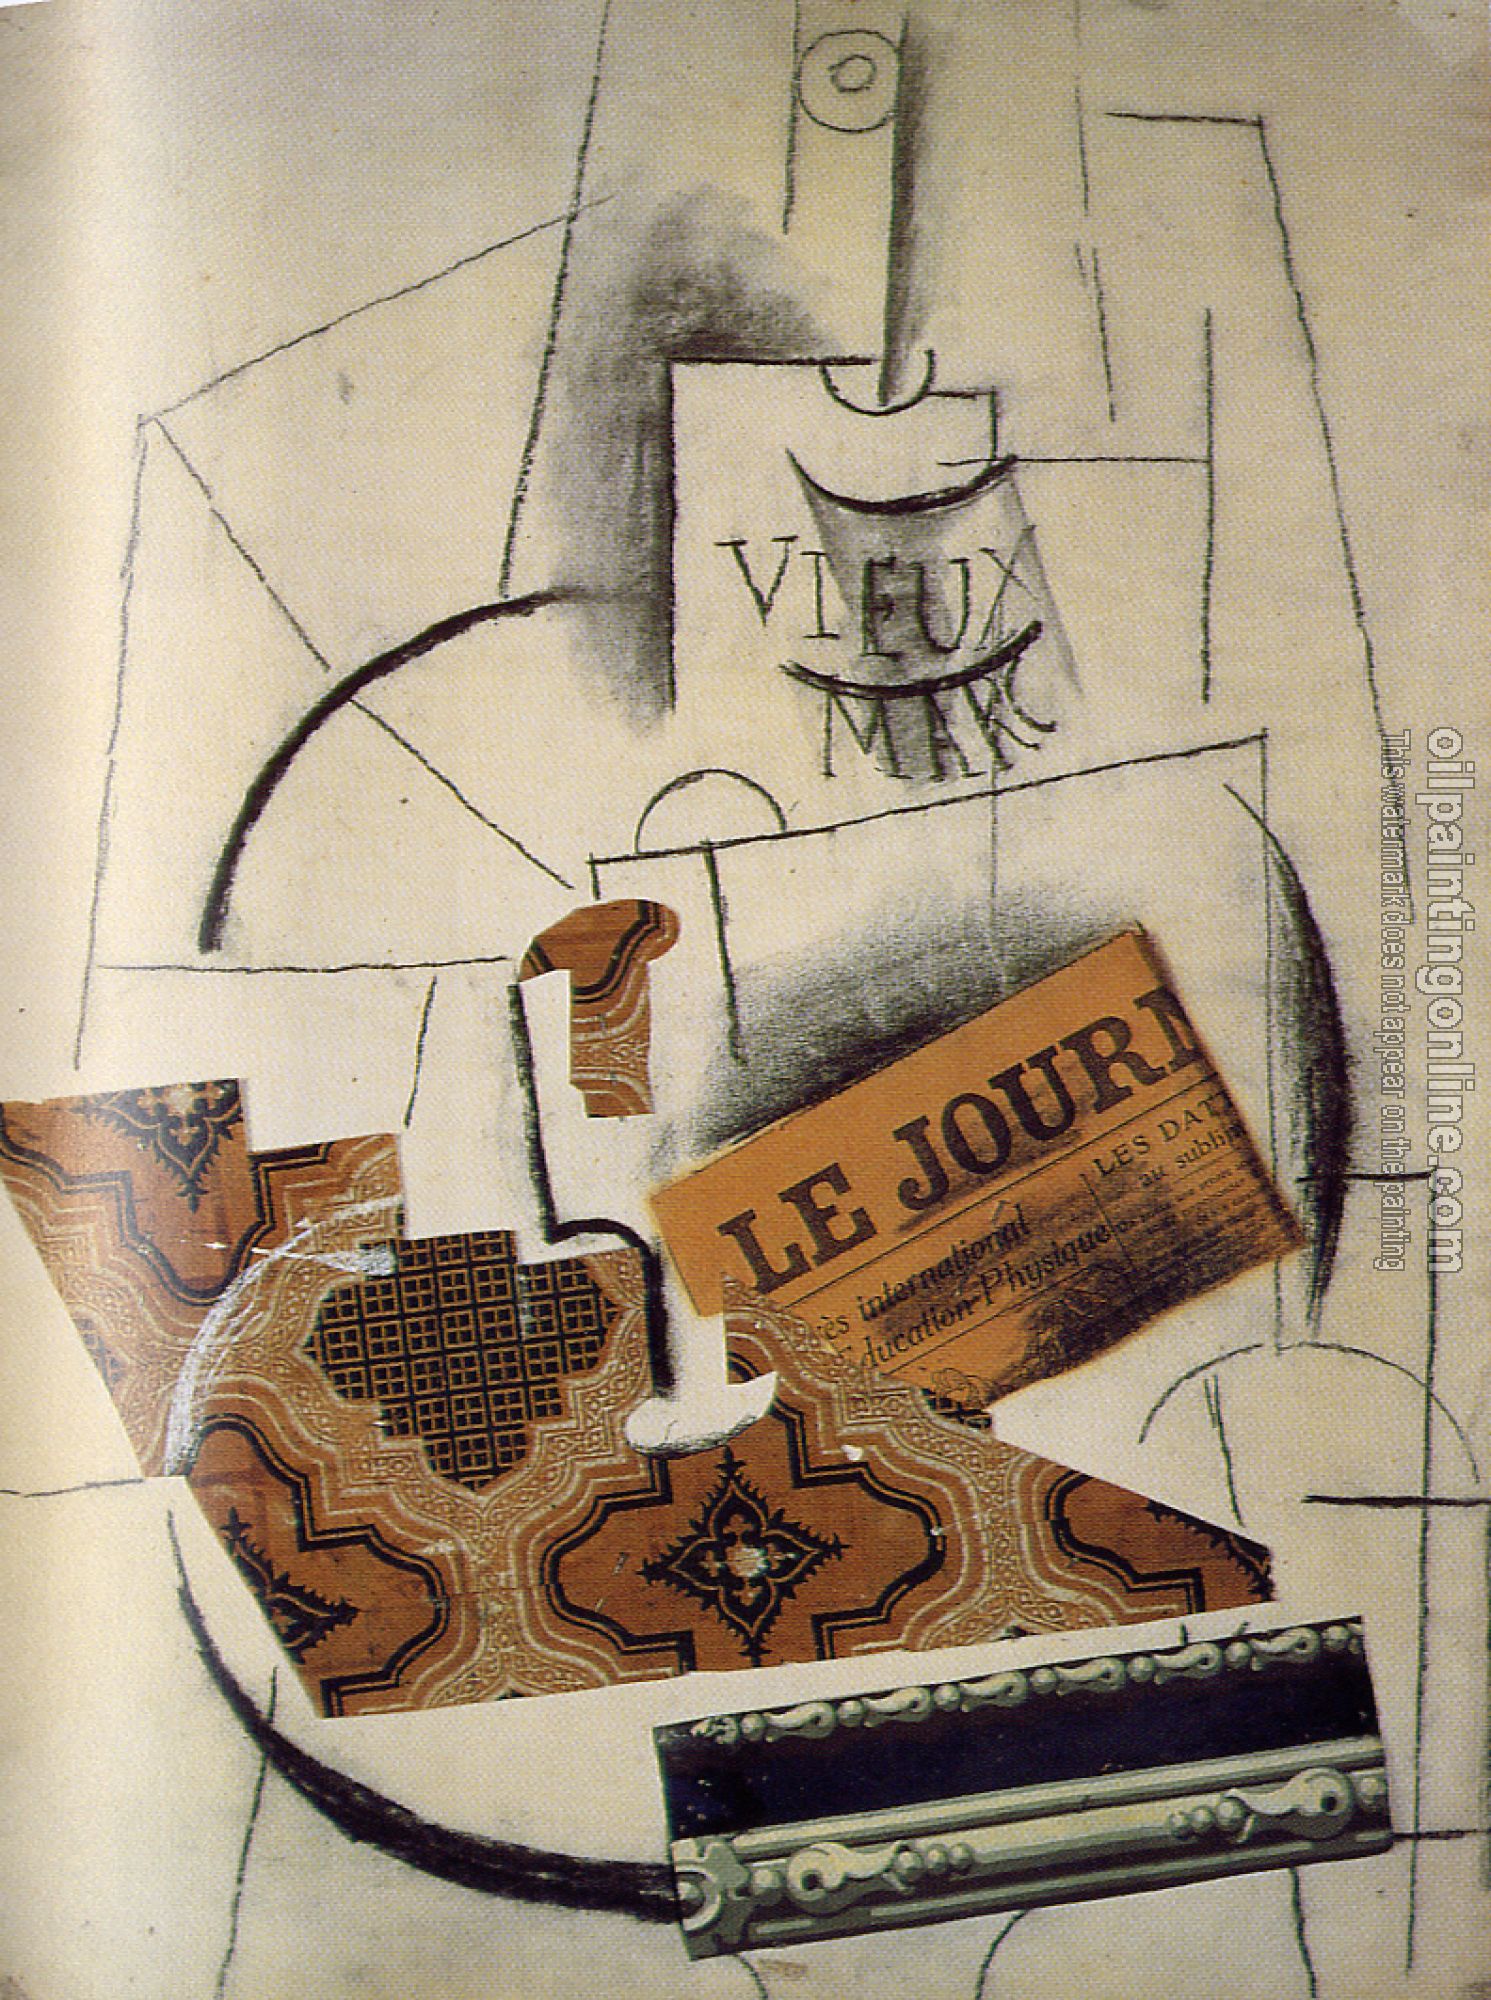 Picasso, Pablo - bottle of vieux marc